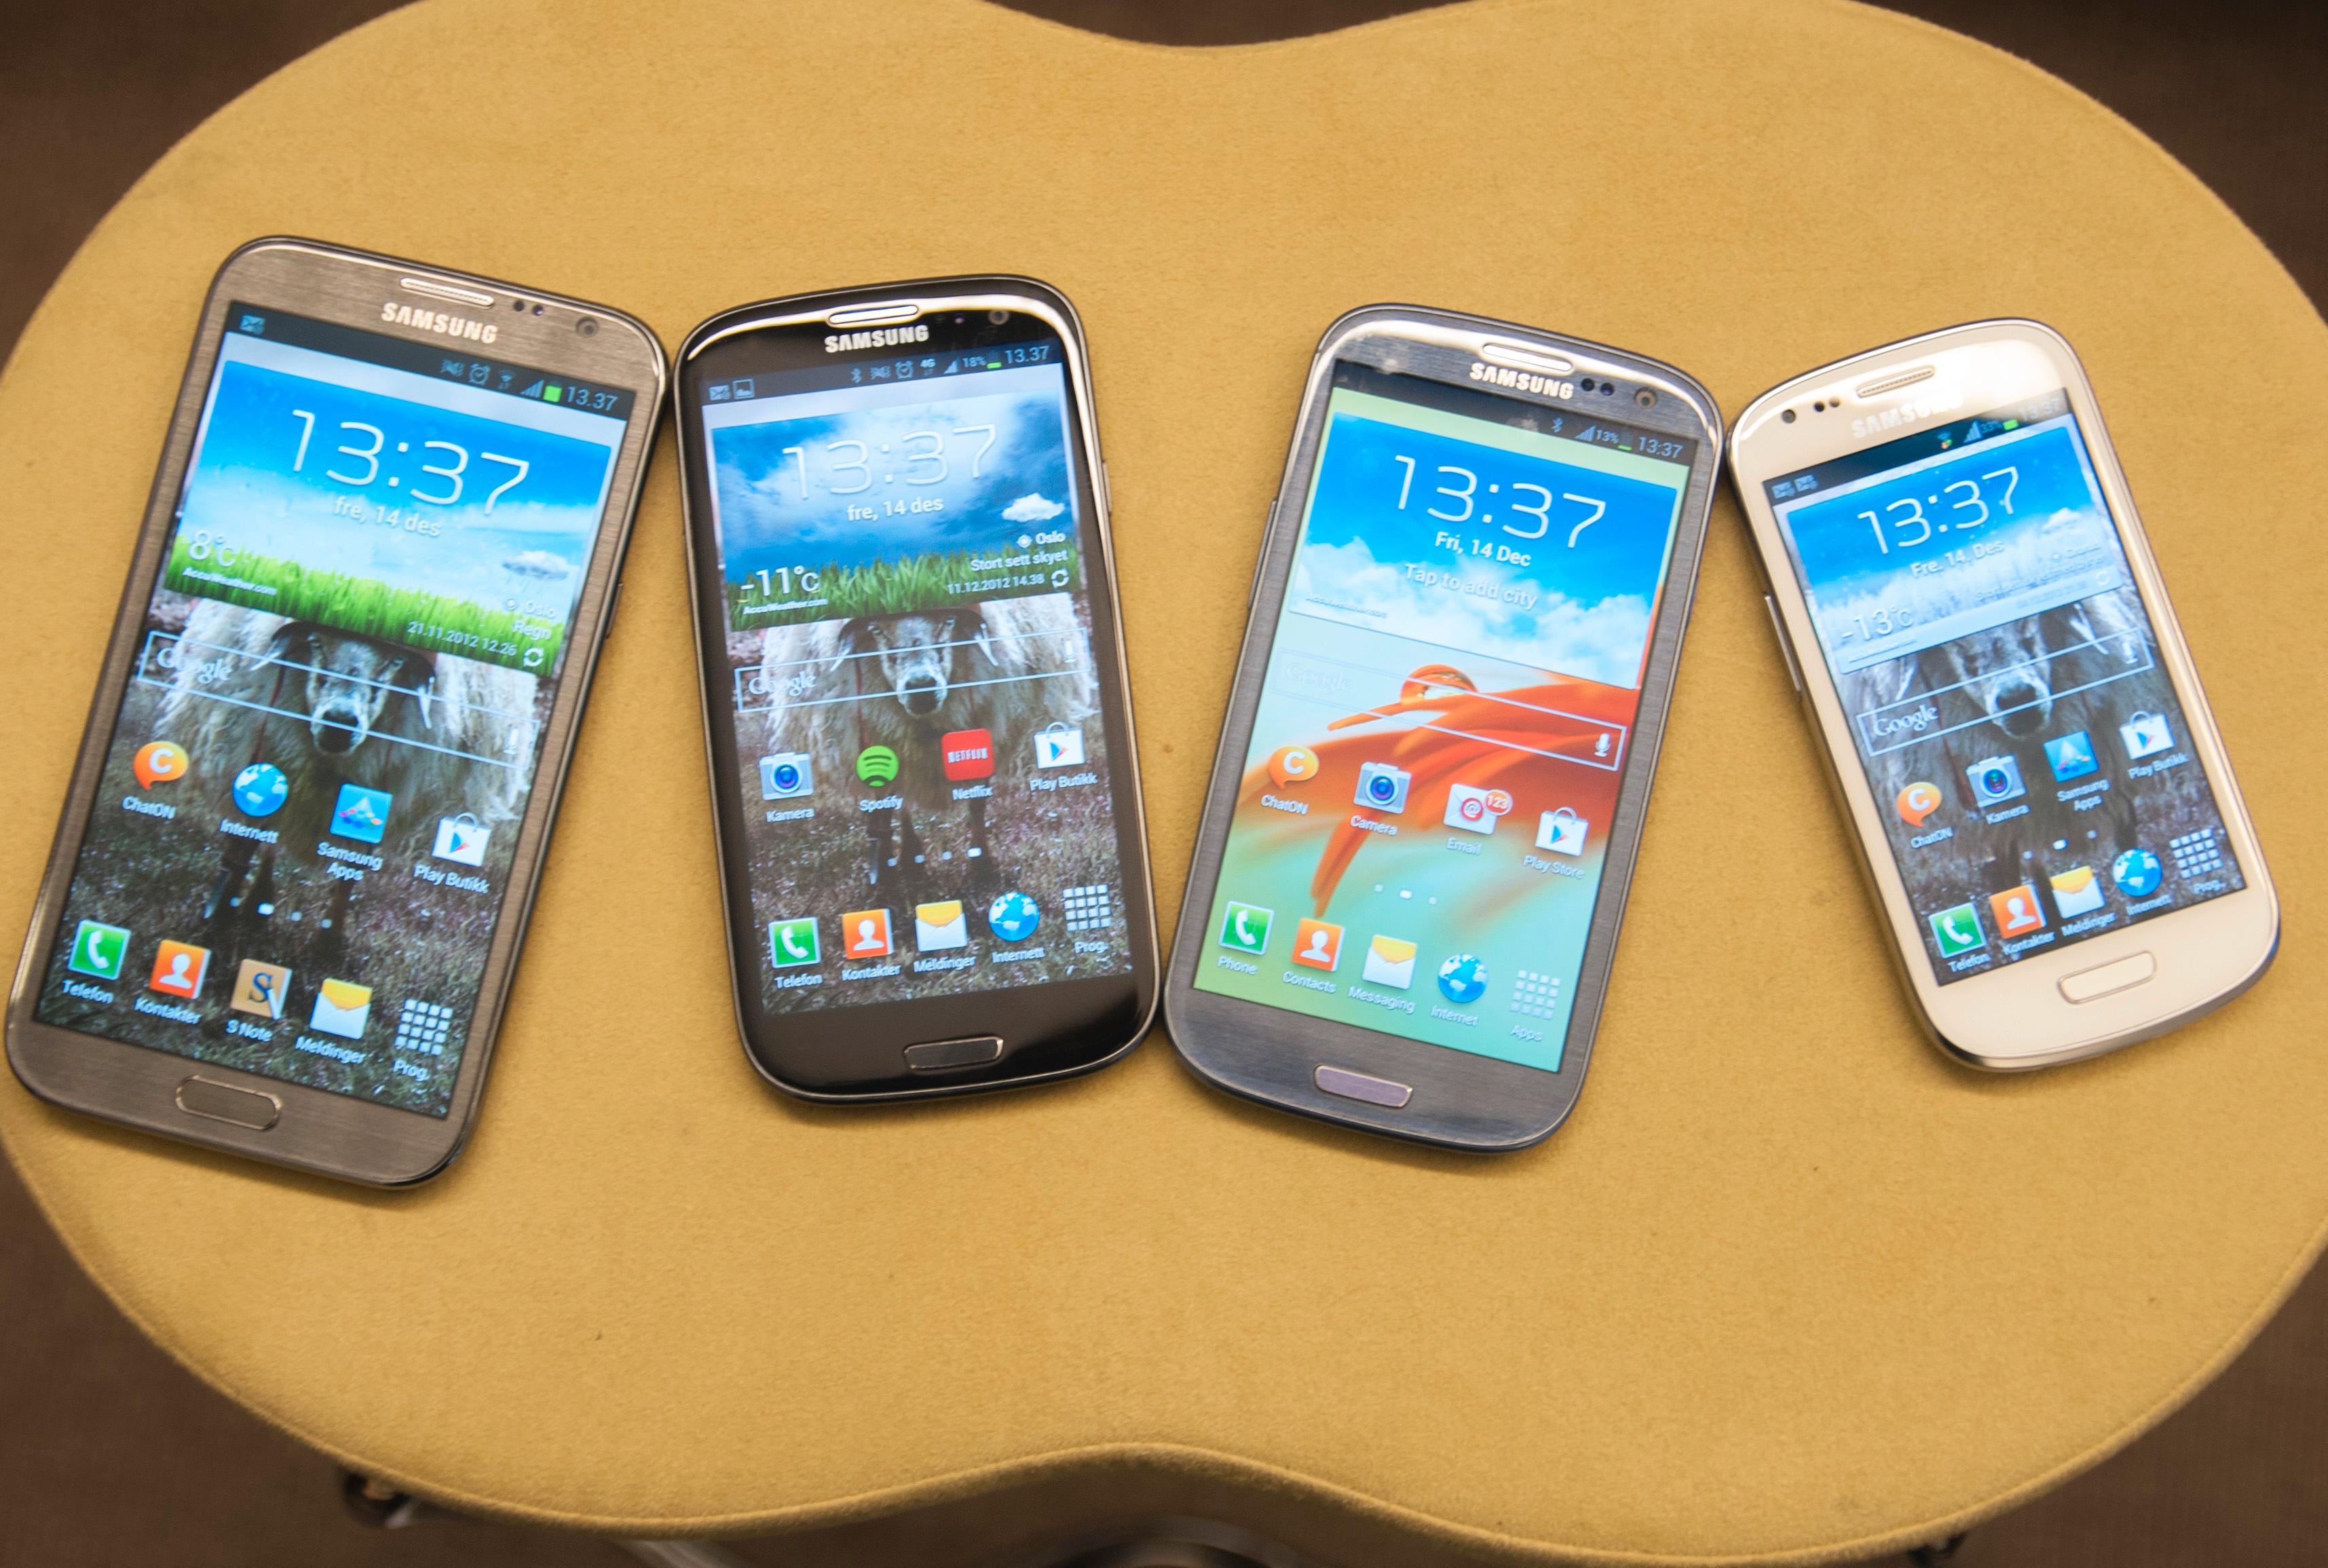 Fire galakser - fra venstre; Galaxy Note II, Galaxy S III 4G, Galaxy S III og Galaxy S III Mini.